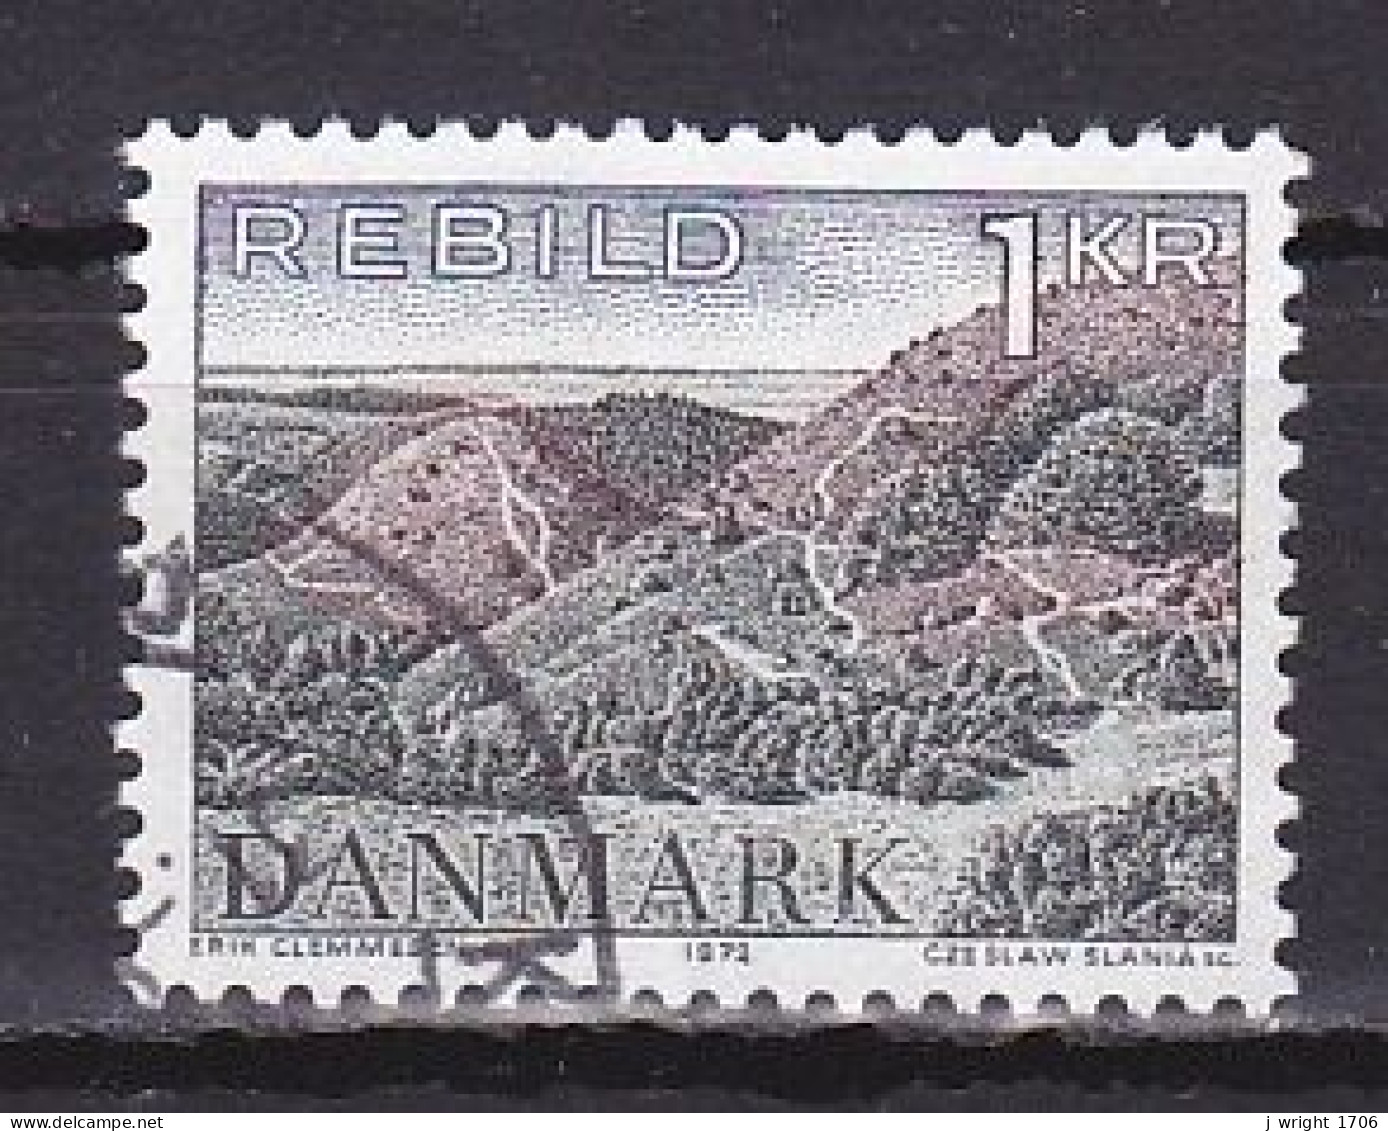 Denmark, 1972, Natural Preservation/Rebild Hills, 1kr, USED - Oblitérés